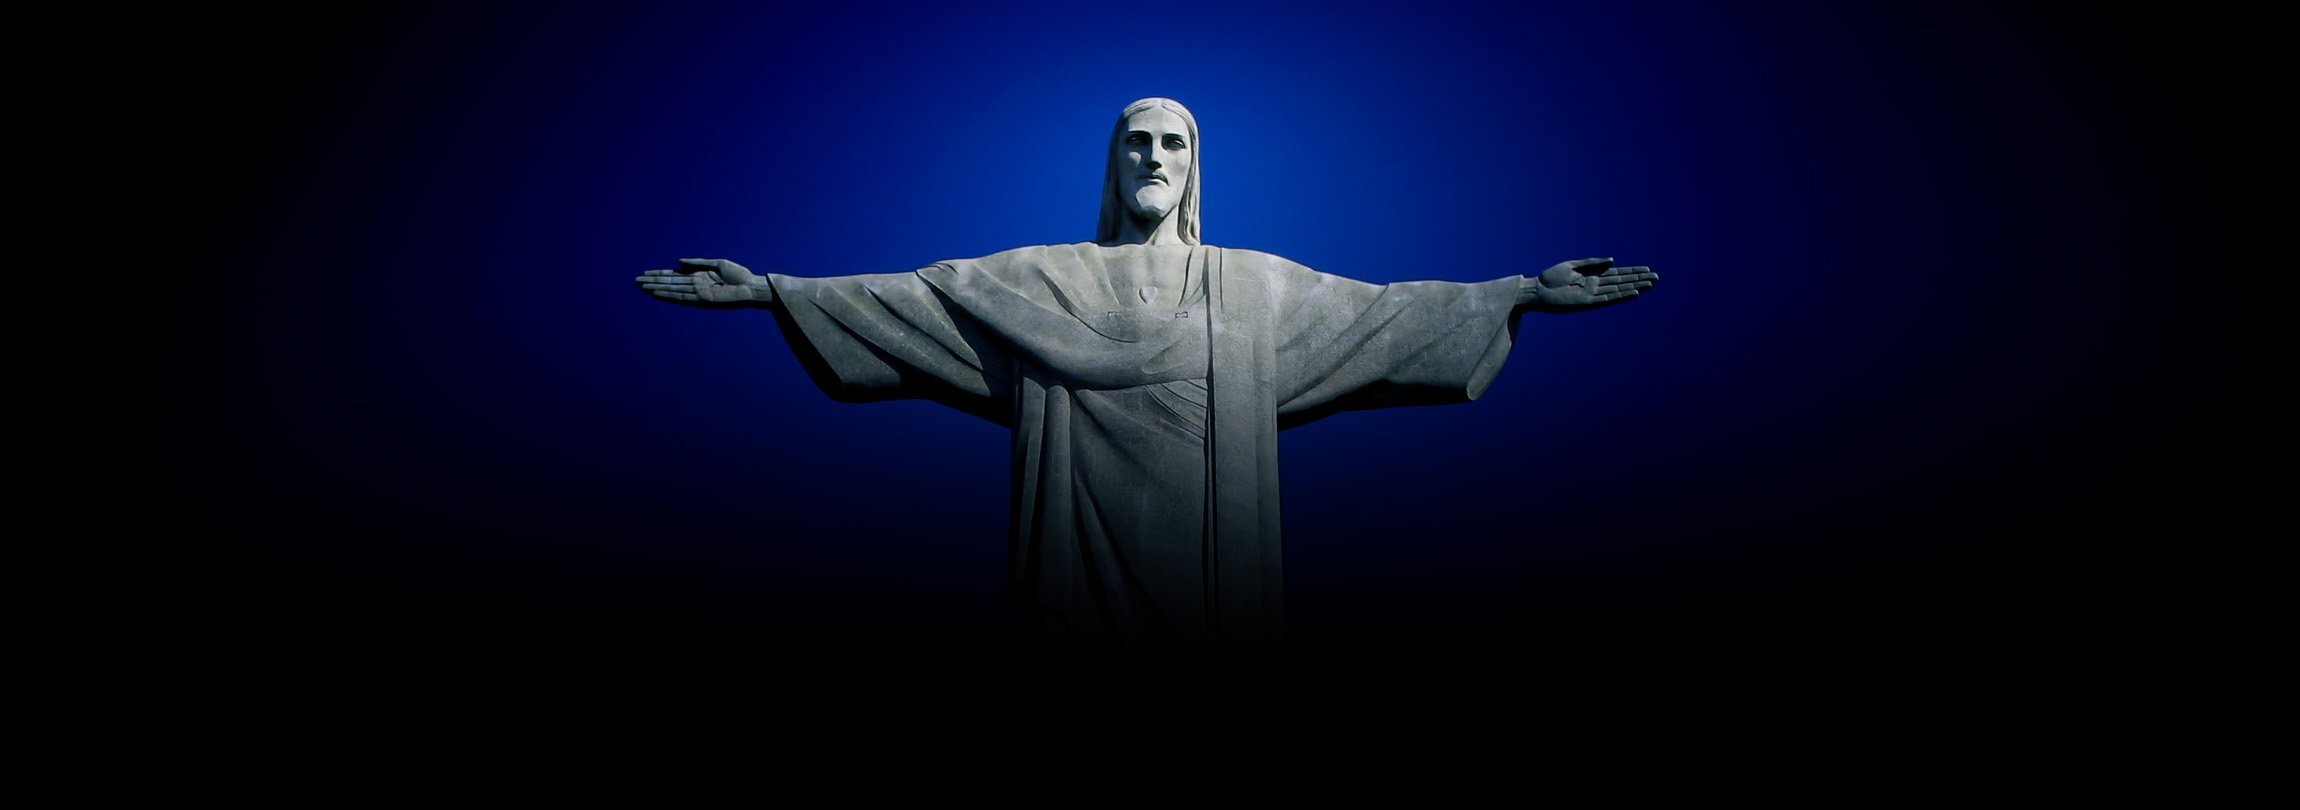 O Cristo Redentor e seu significado para o Brasil